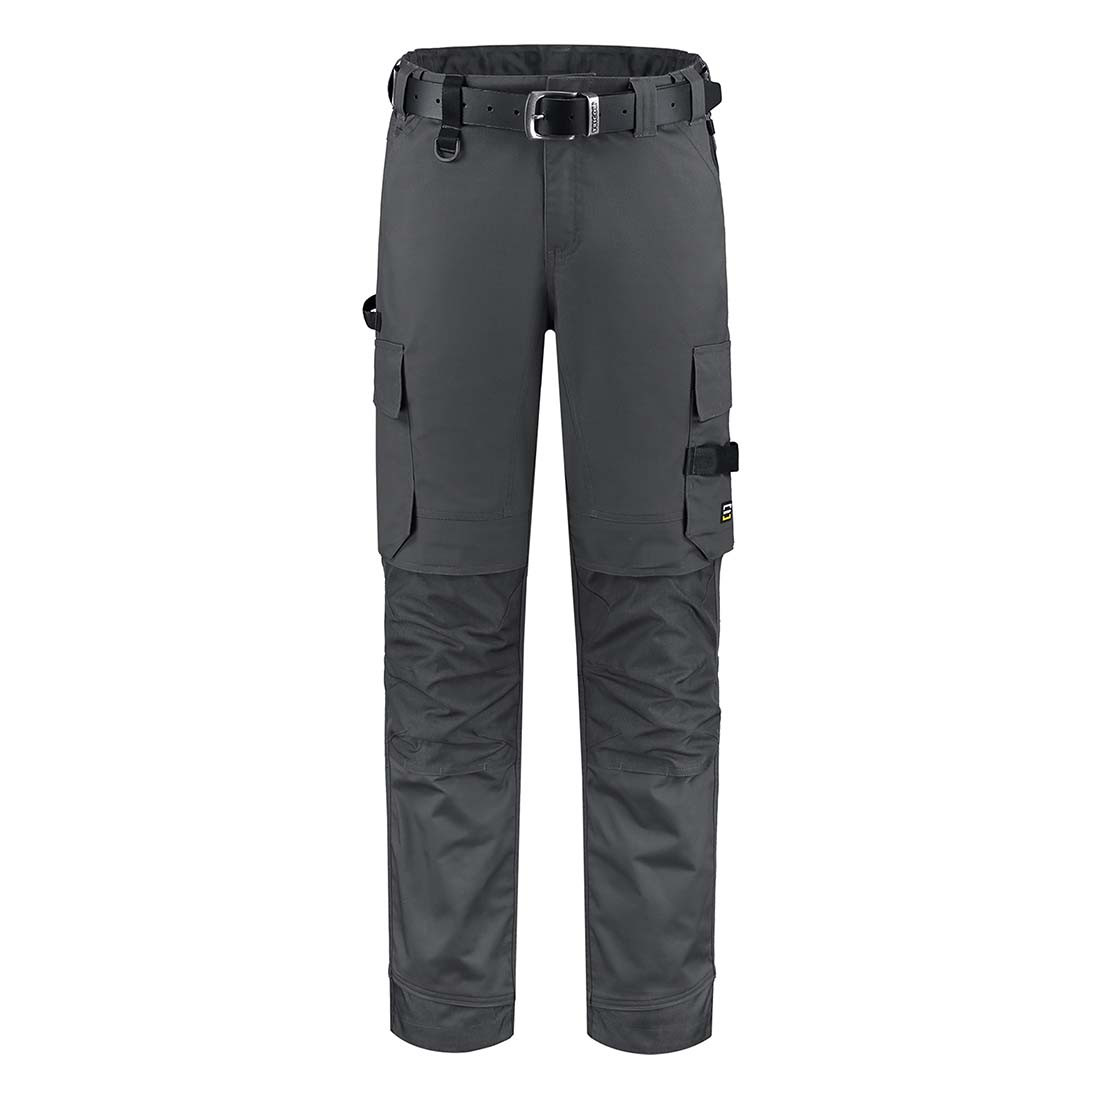 Pantalon de travail élastique unisexe - Les vêtements de protection